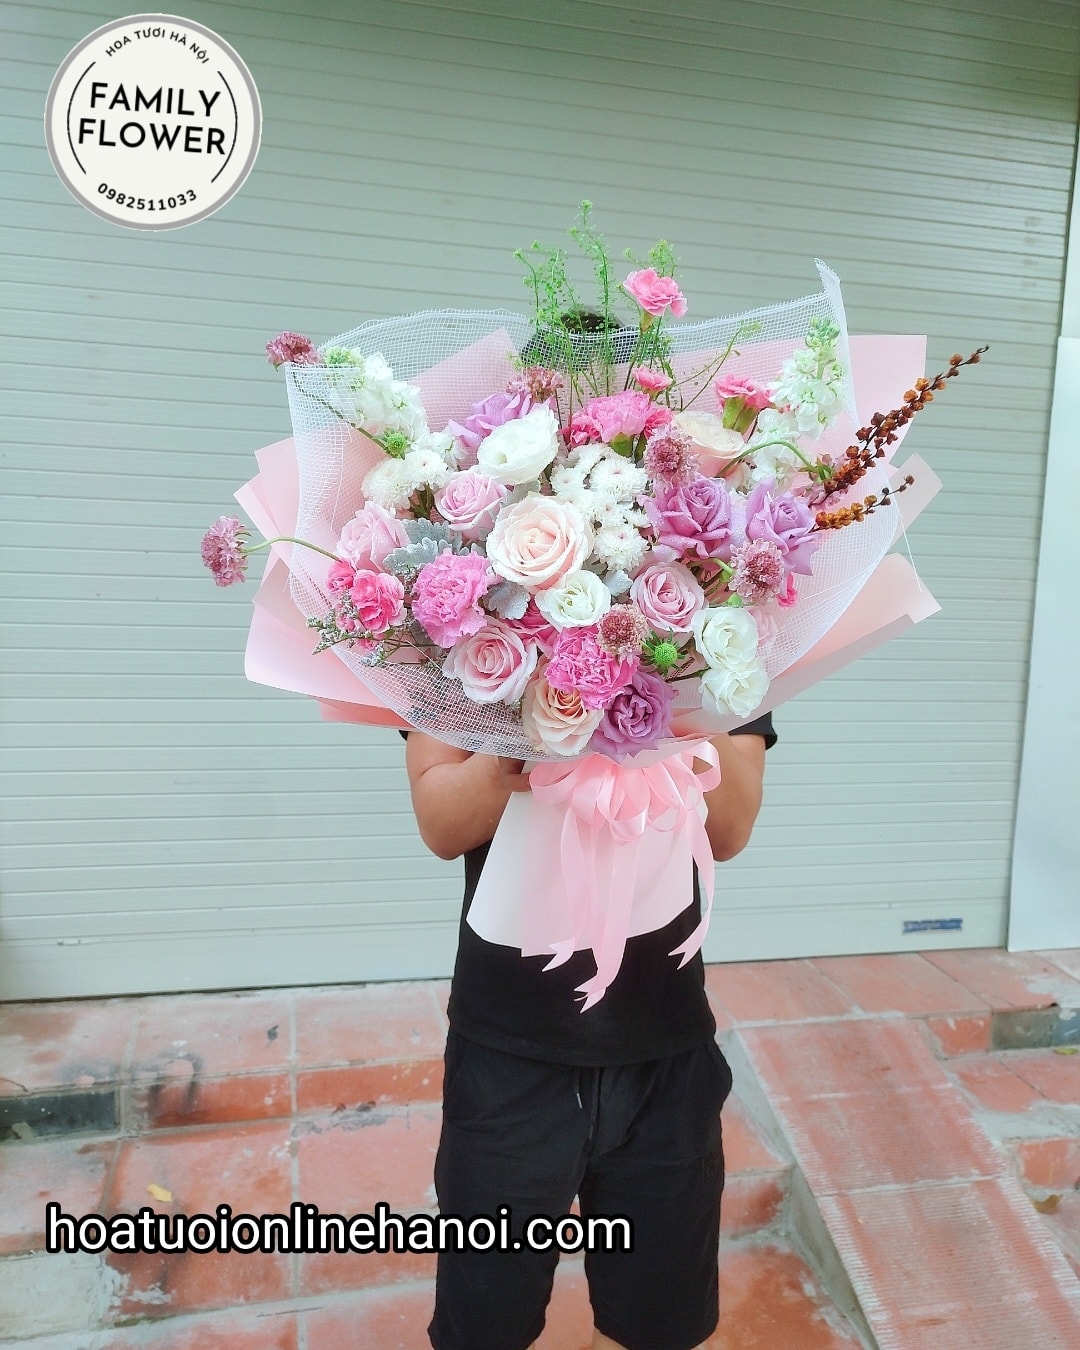 Hoa sinh nhật bạn thân  Uflowers  Giao Hoa Chuyên Nghiệp  Nhiều mẫu hoa  đẹp